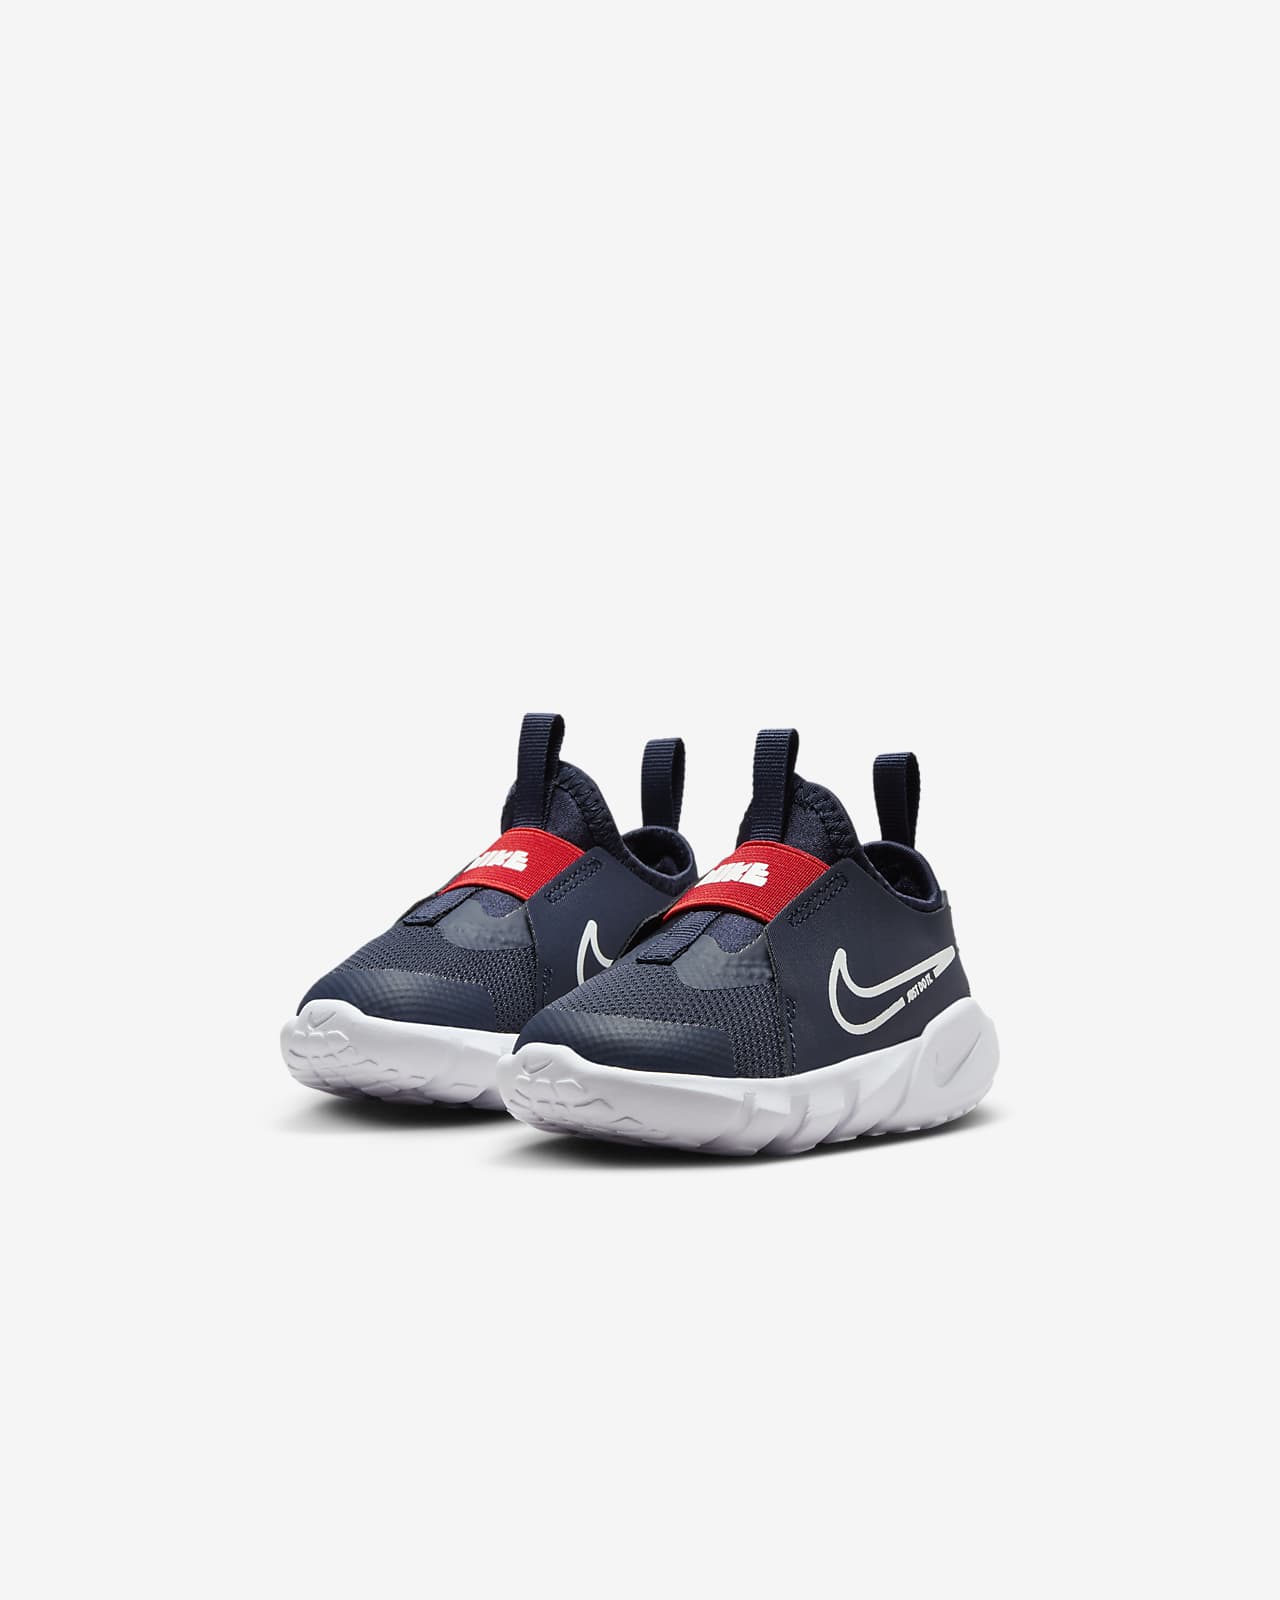 Nike Flex Runner 2 Baby/Toddler Shoes.